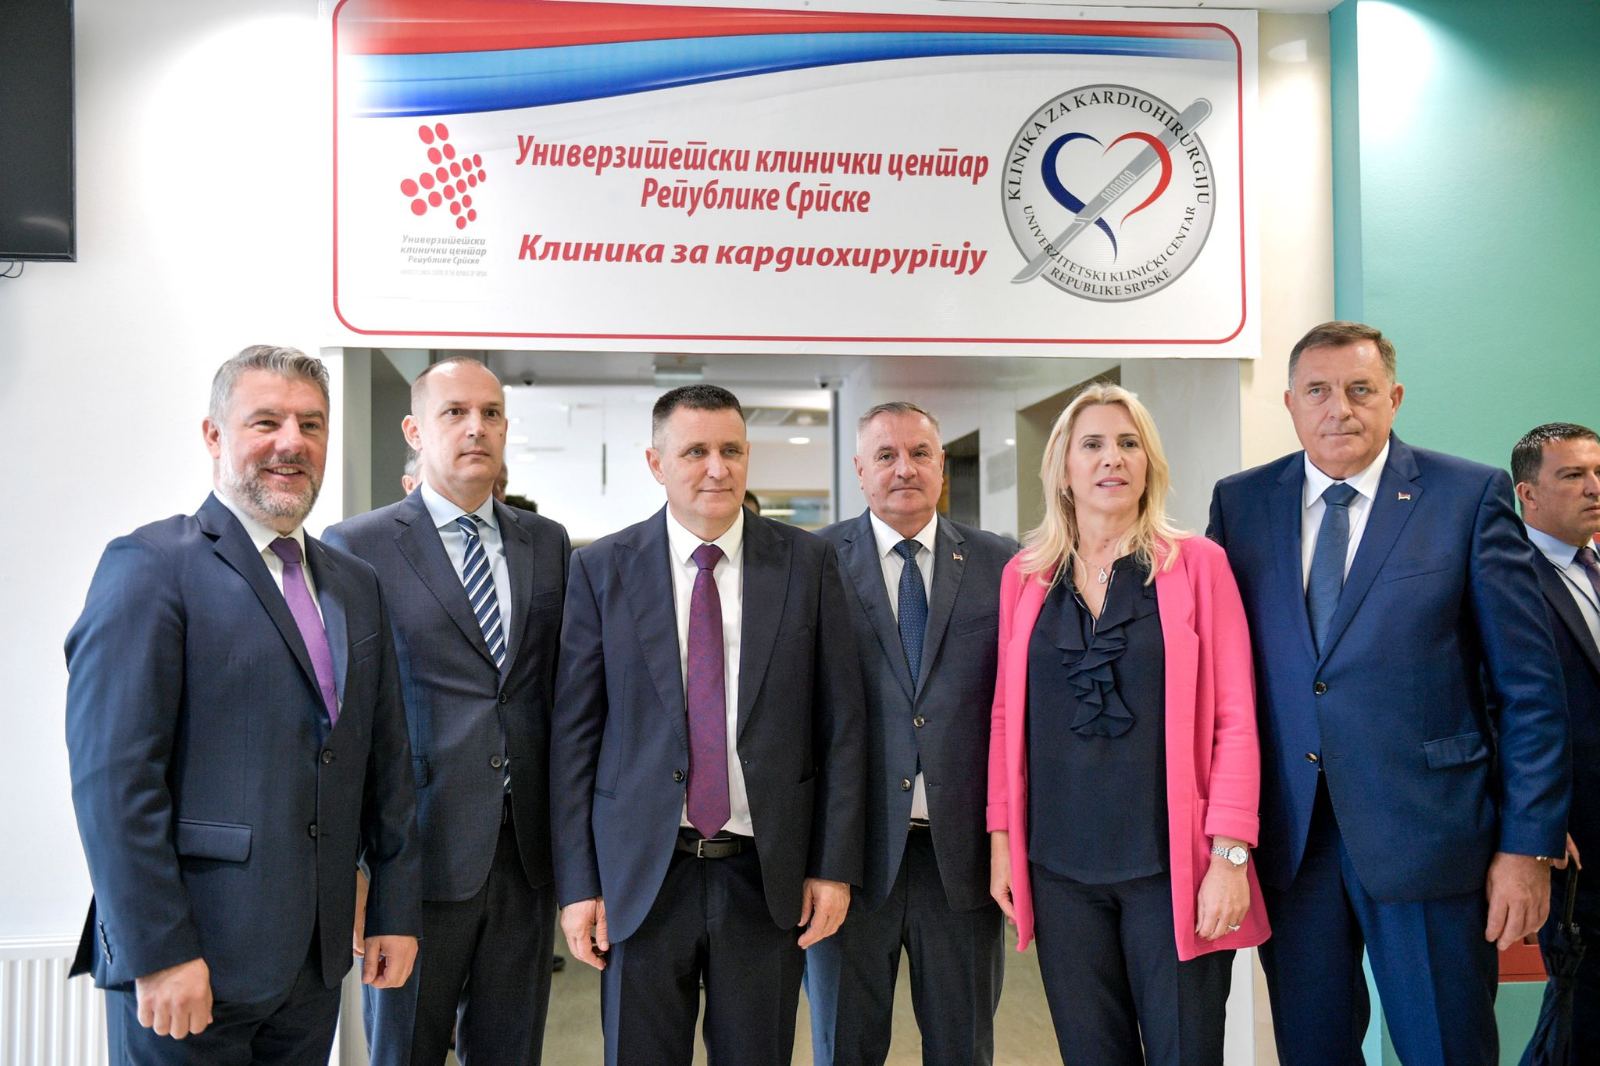 Изградњом клинике за кардиохирургију Република Српска показала способност